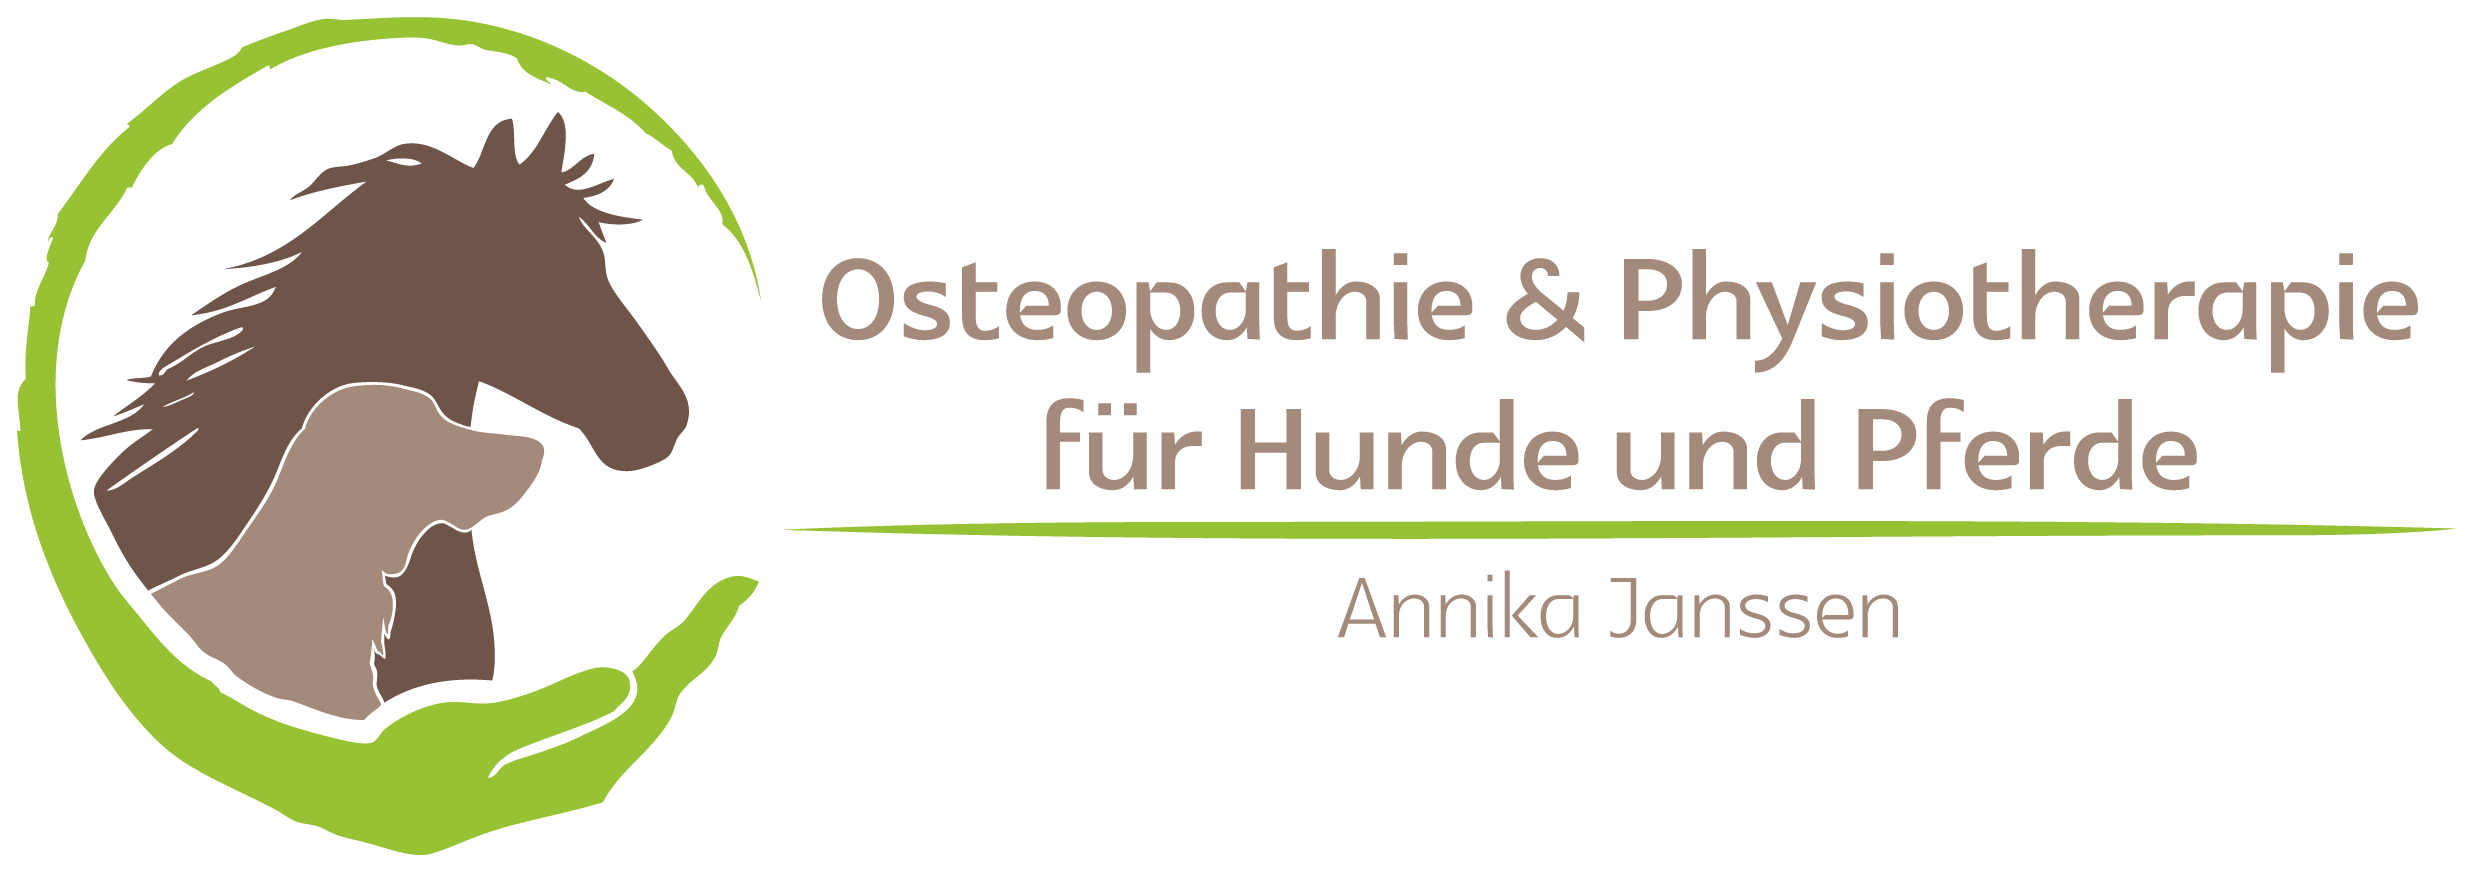 Annika Janssen - Osteopathie & Physiotherapie für Hunde und Pferde